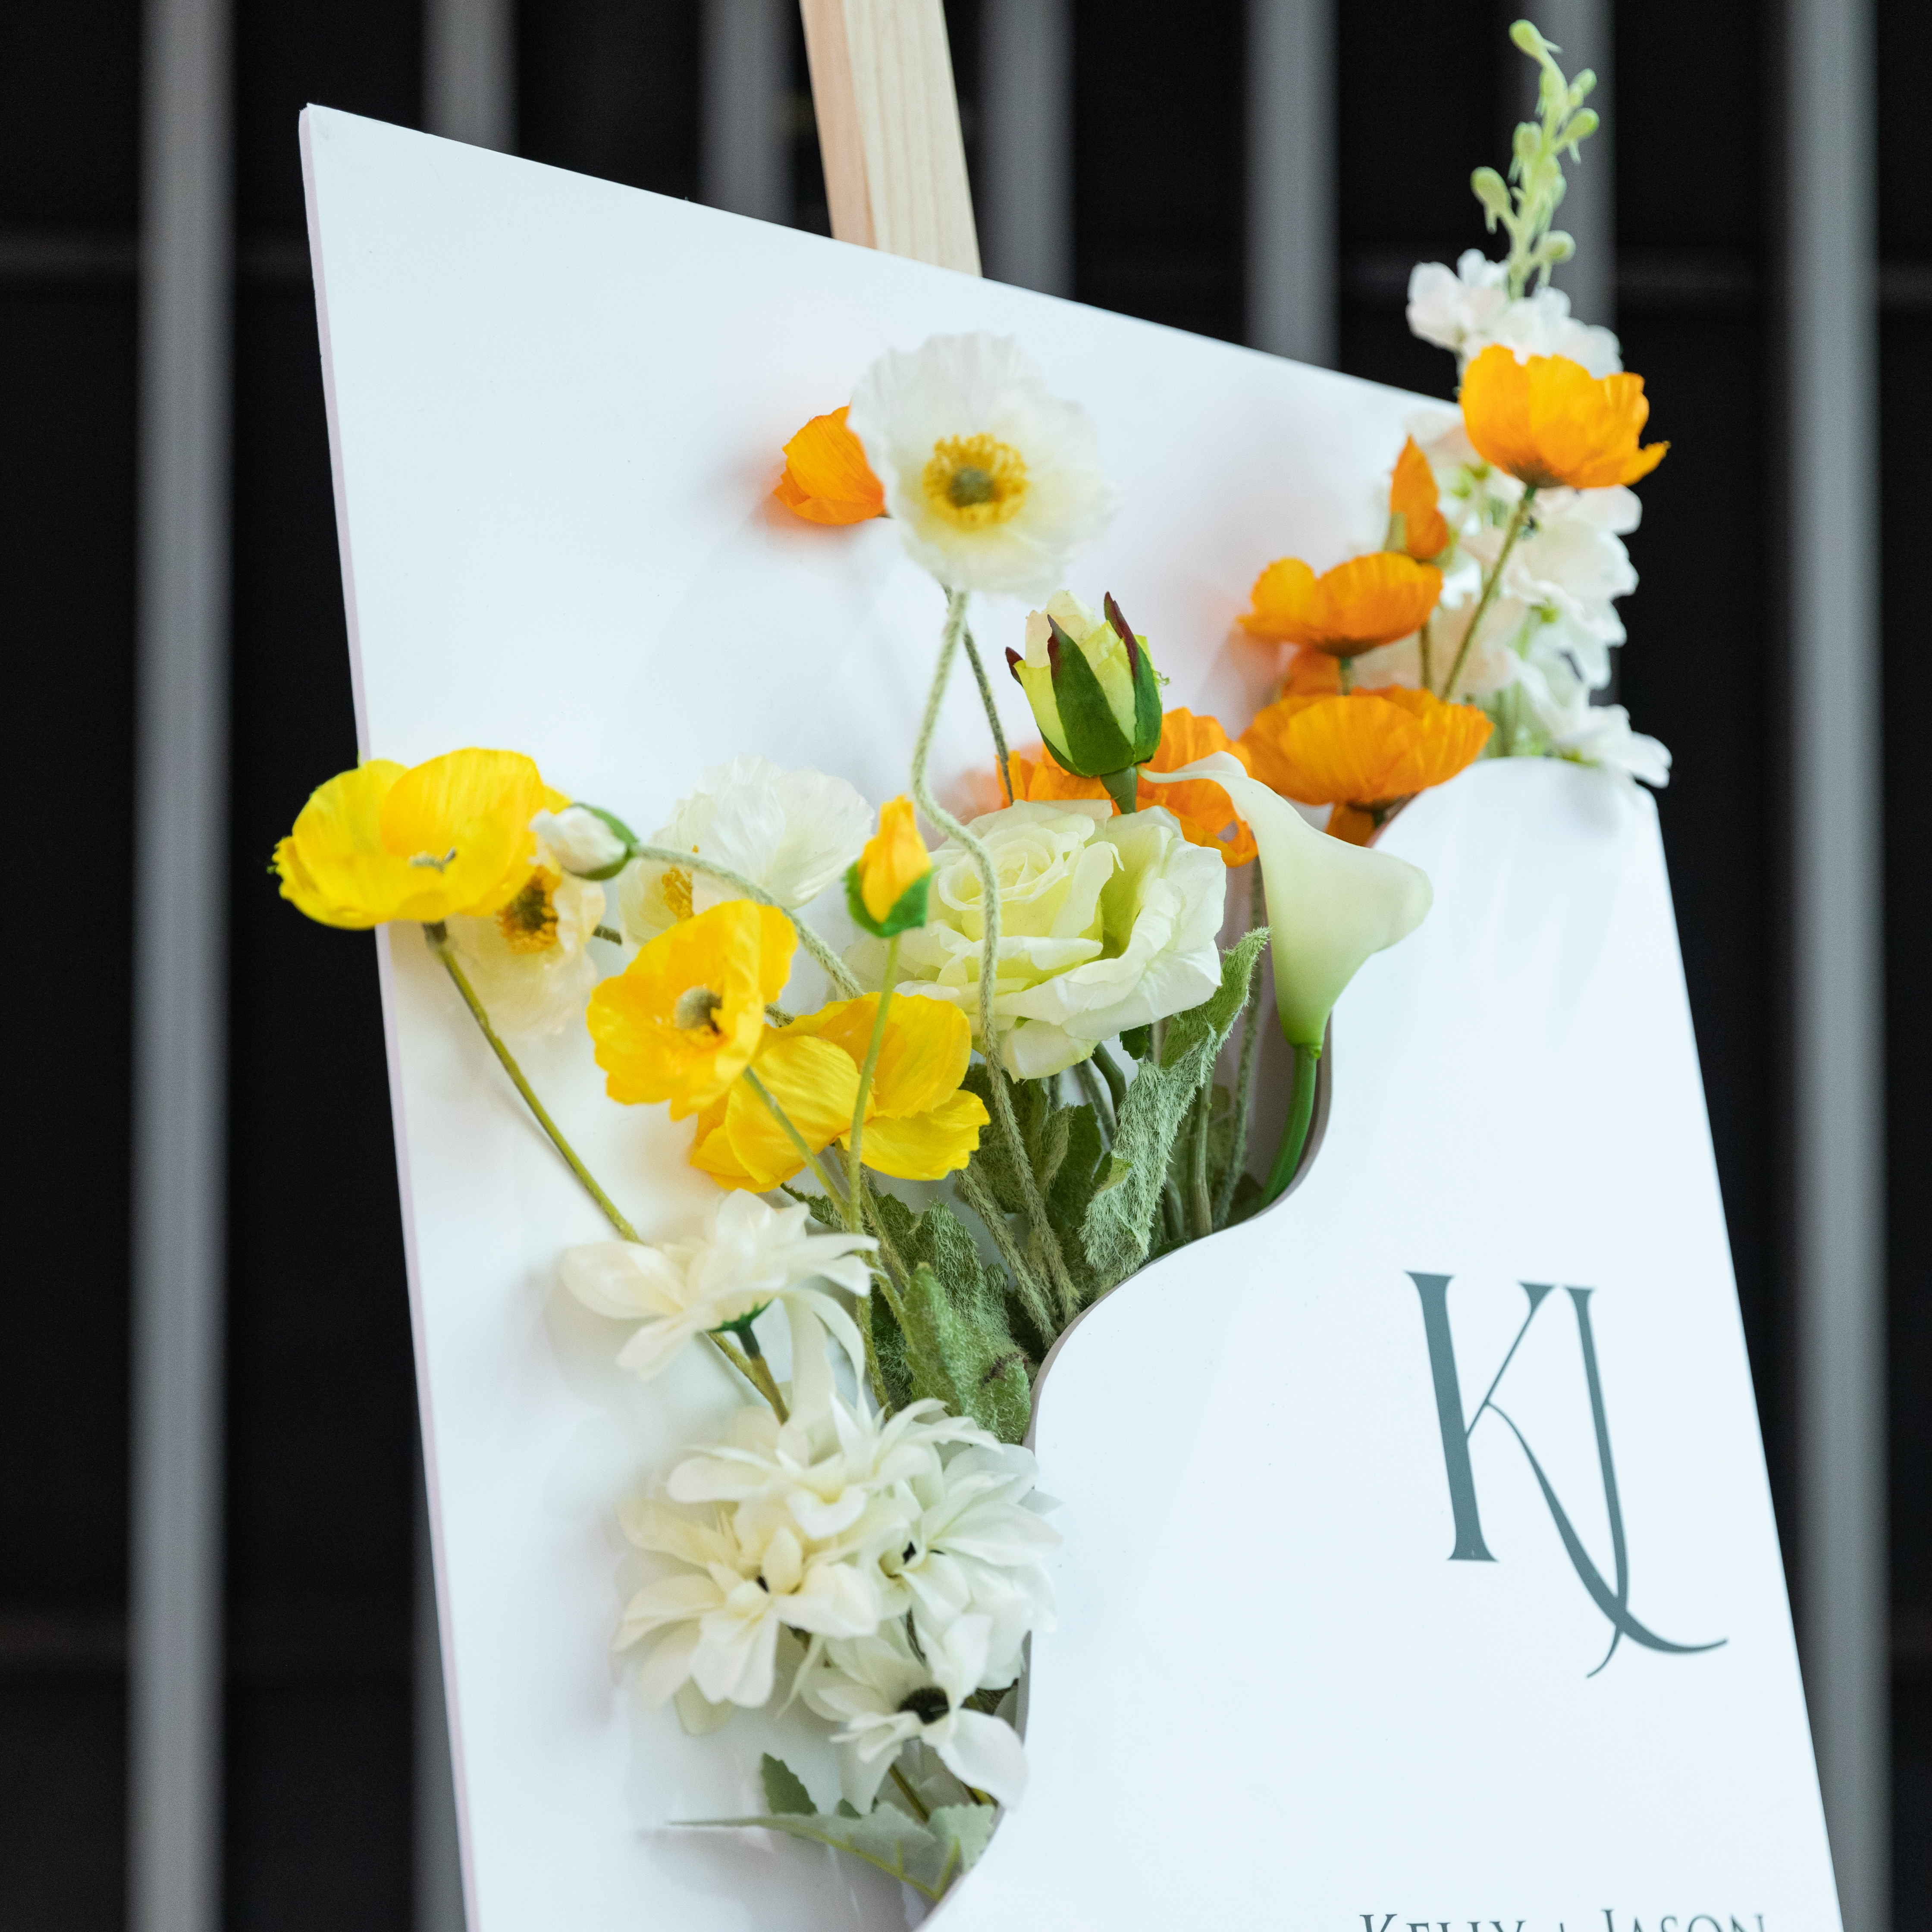 3mm Cartelli Plexiglass tableau di mariage con fiori YK070